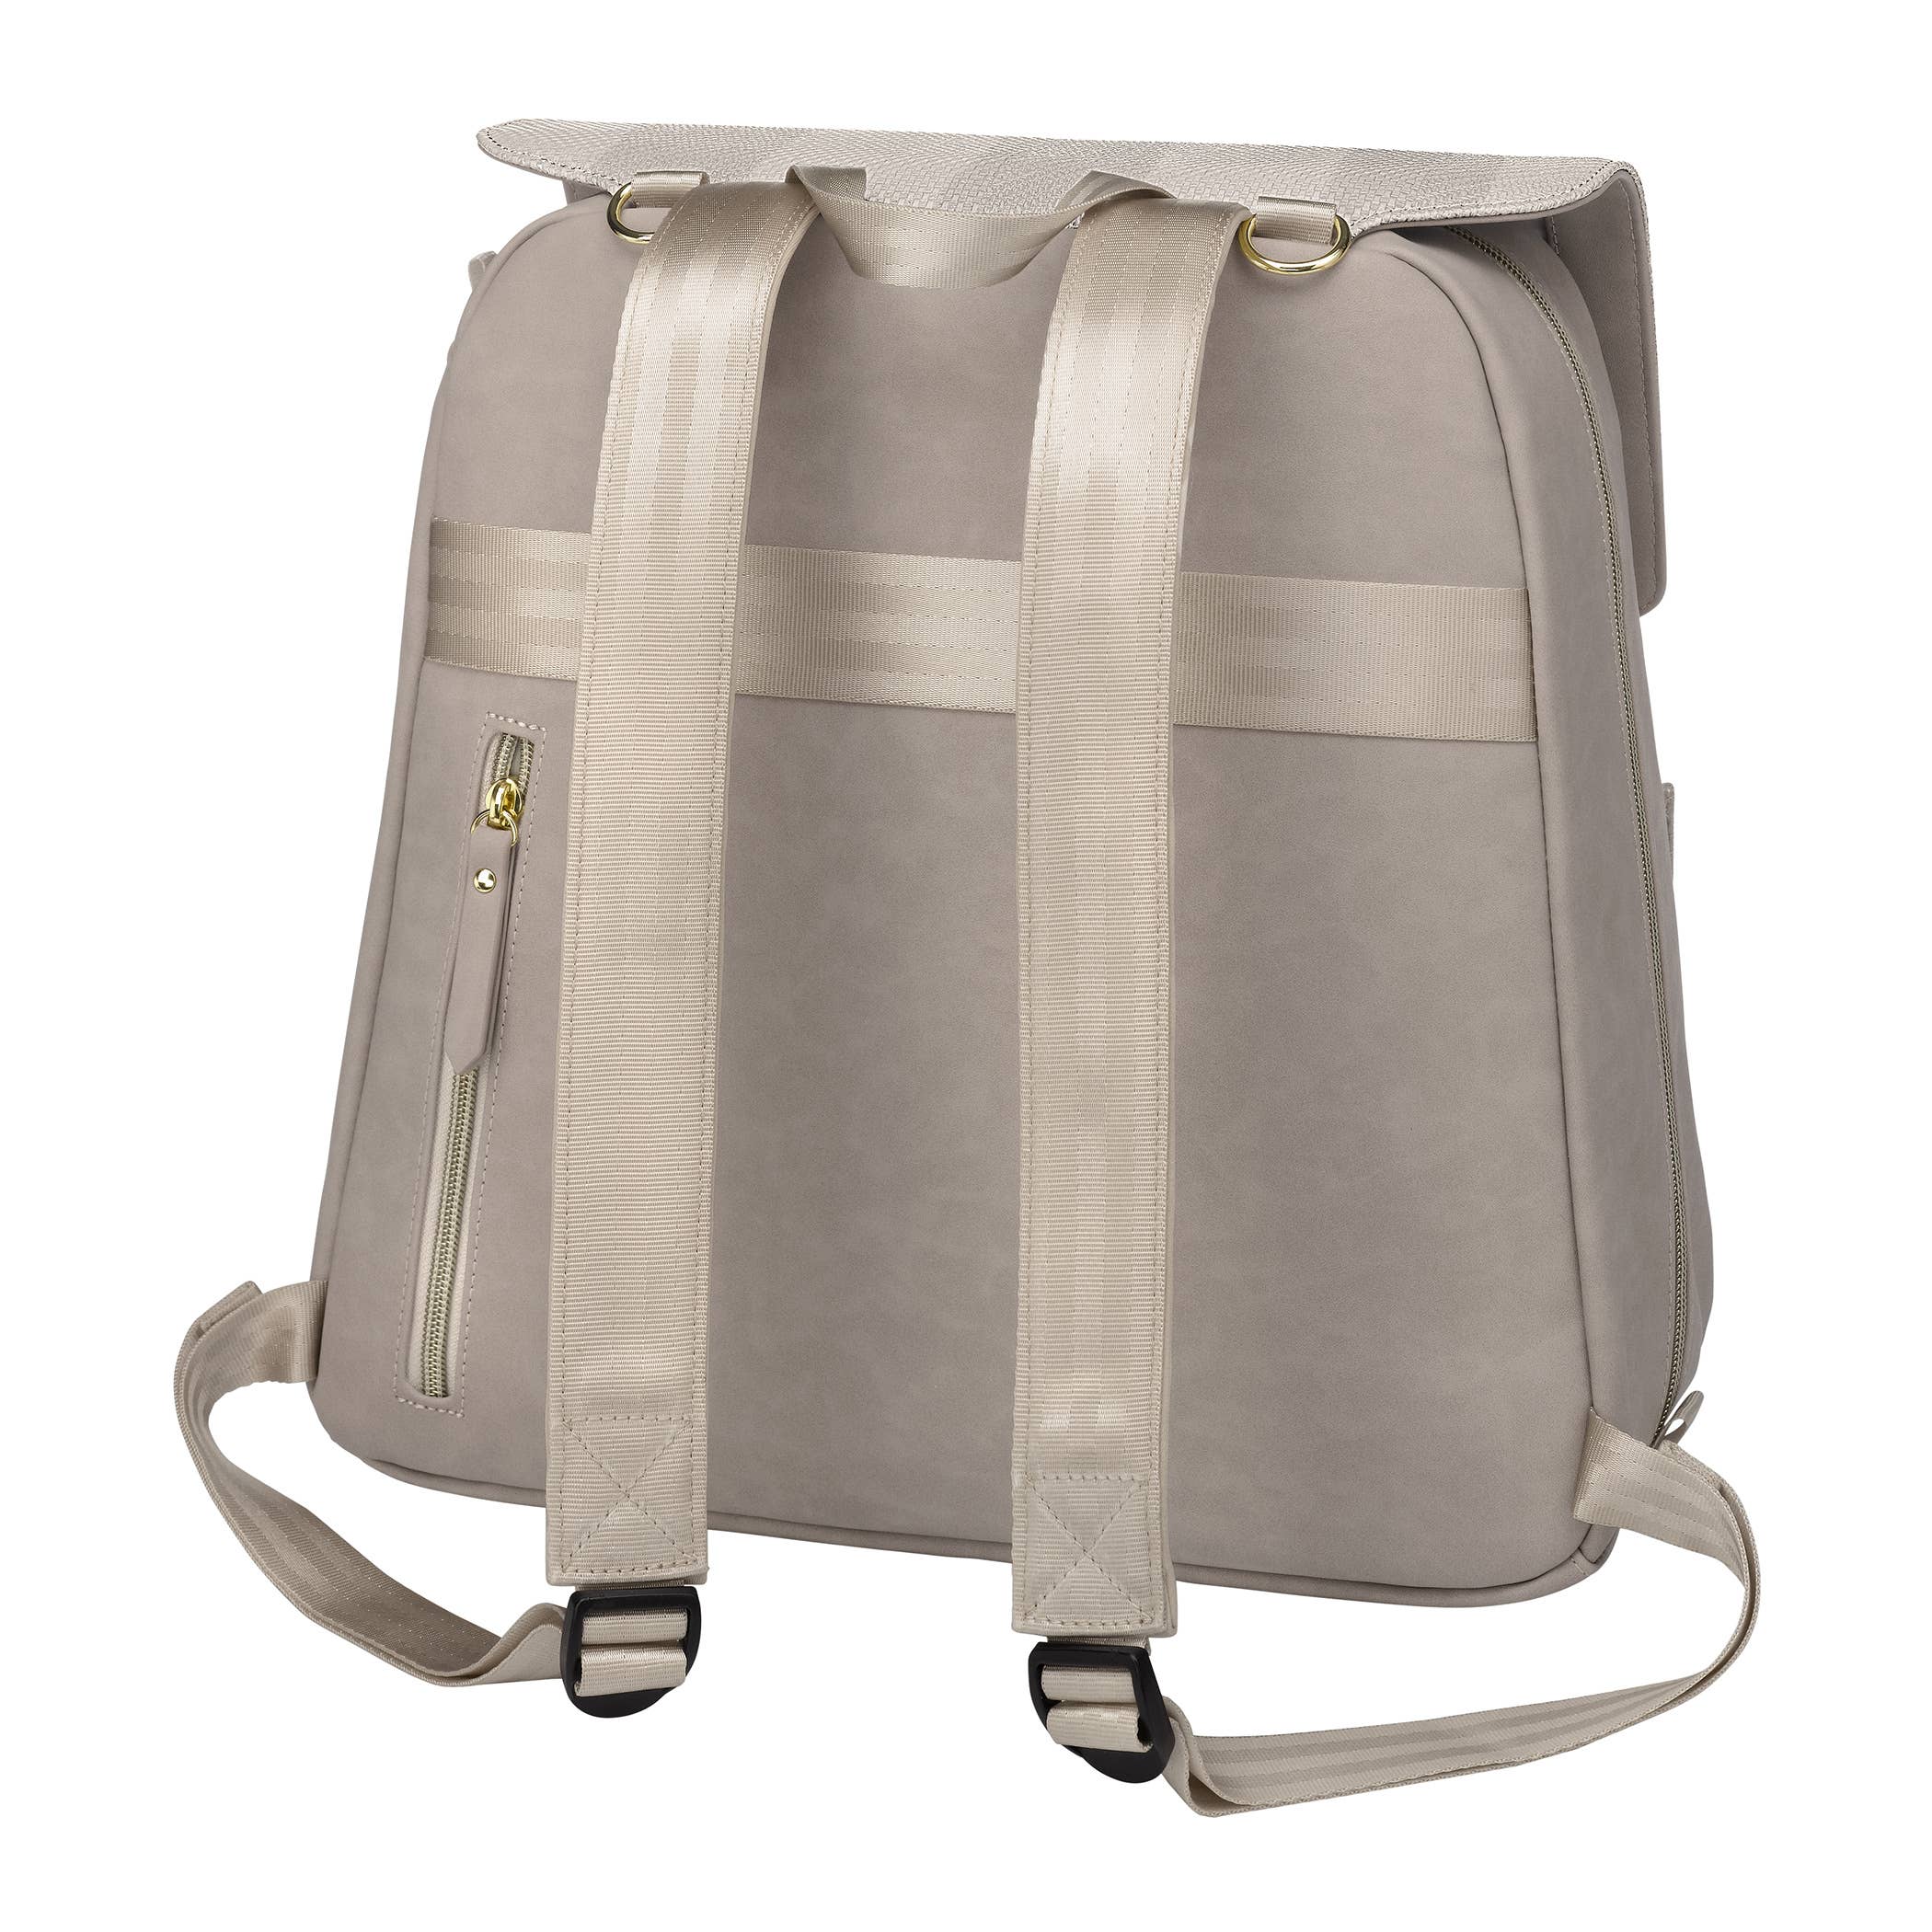 Meta Backpack Diaper Bag - Sand